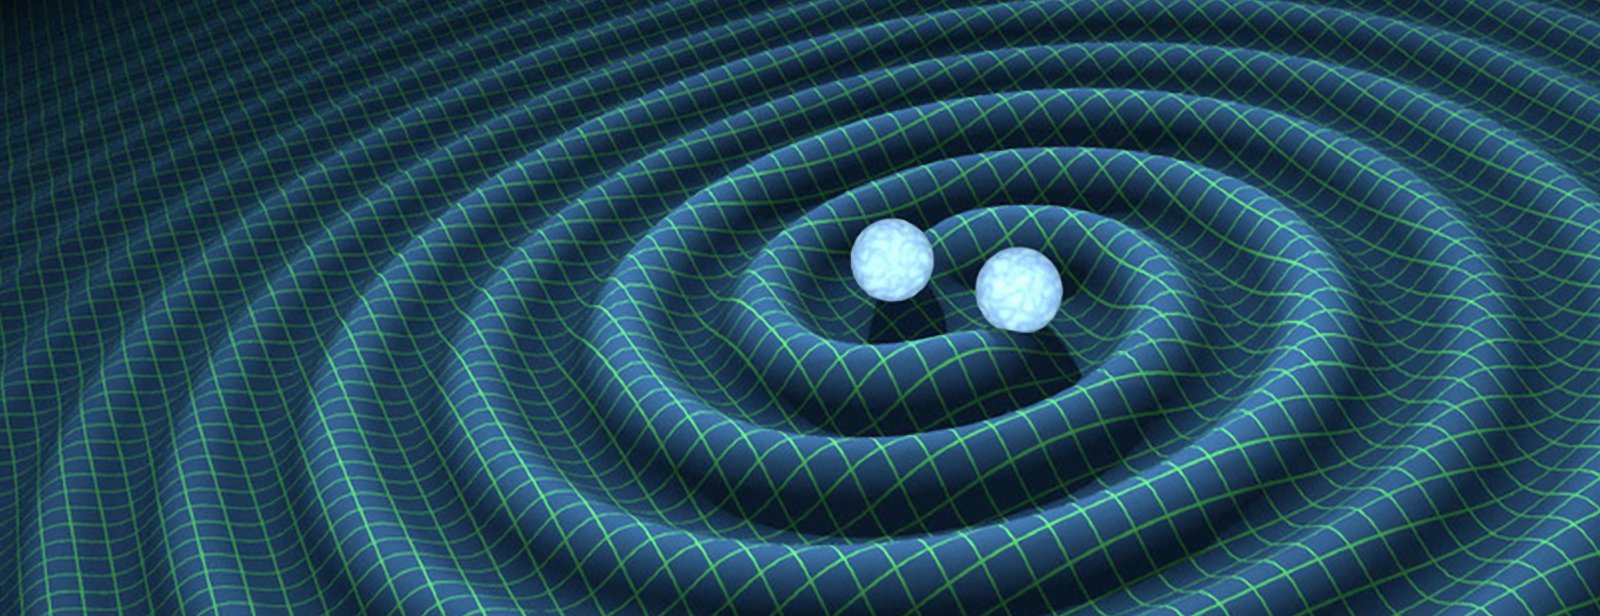 On a détecté des ondes gravitationnelles